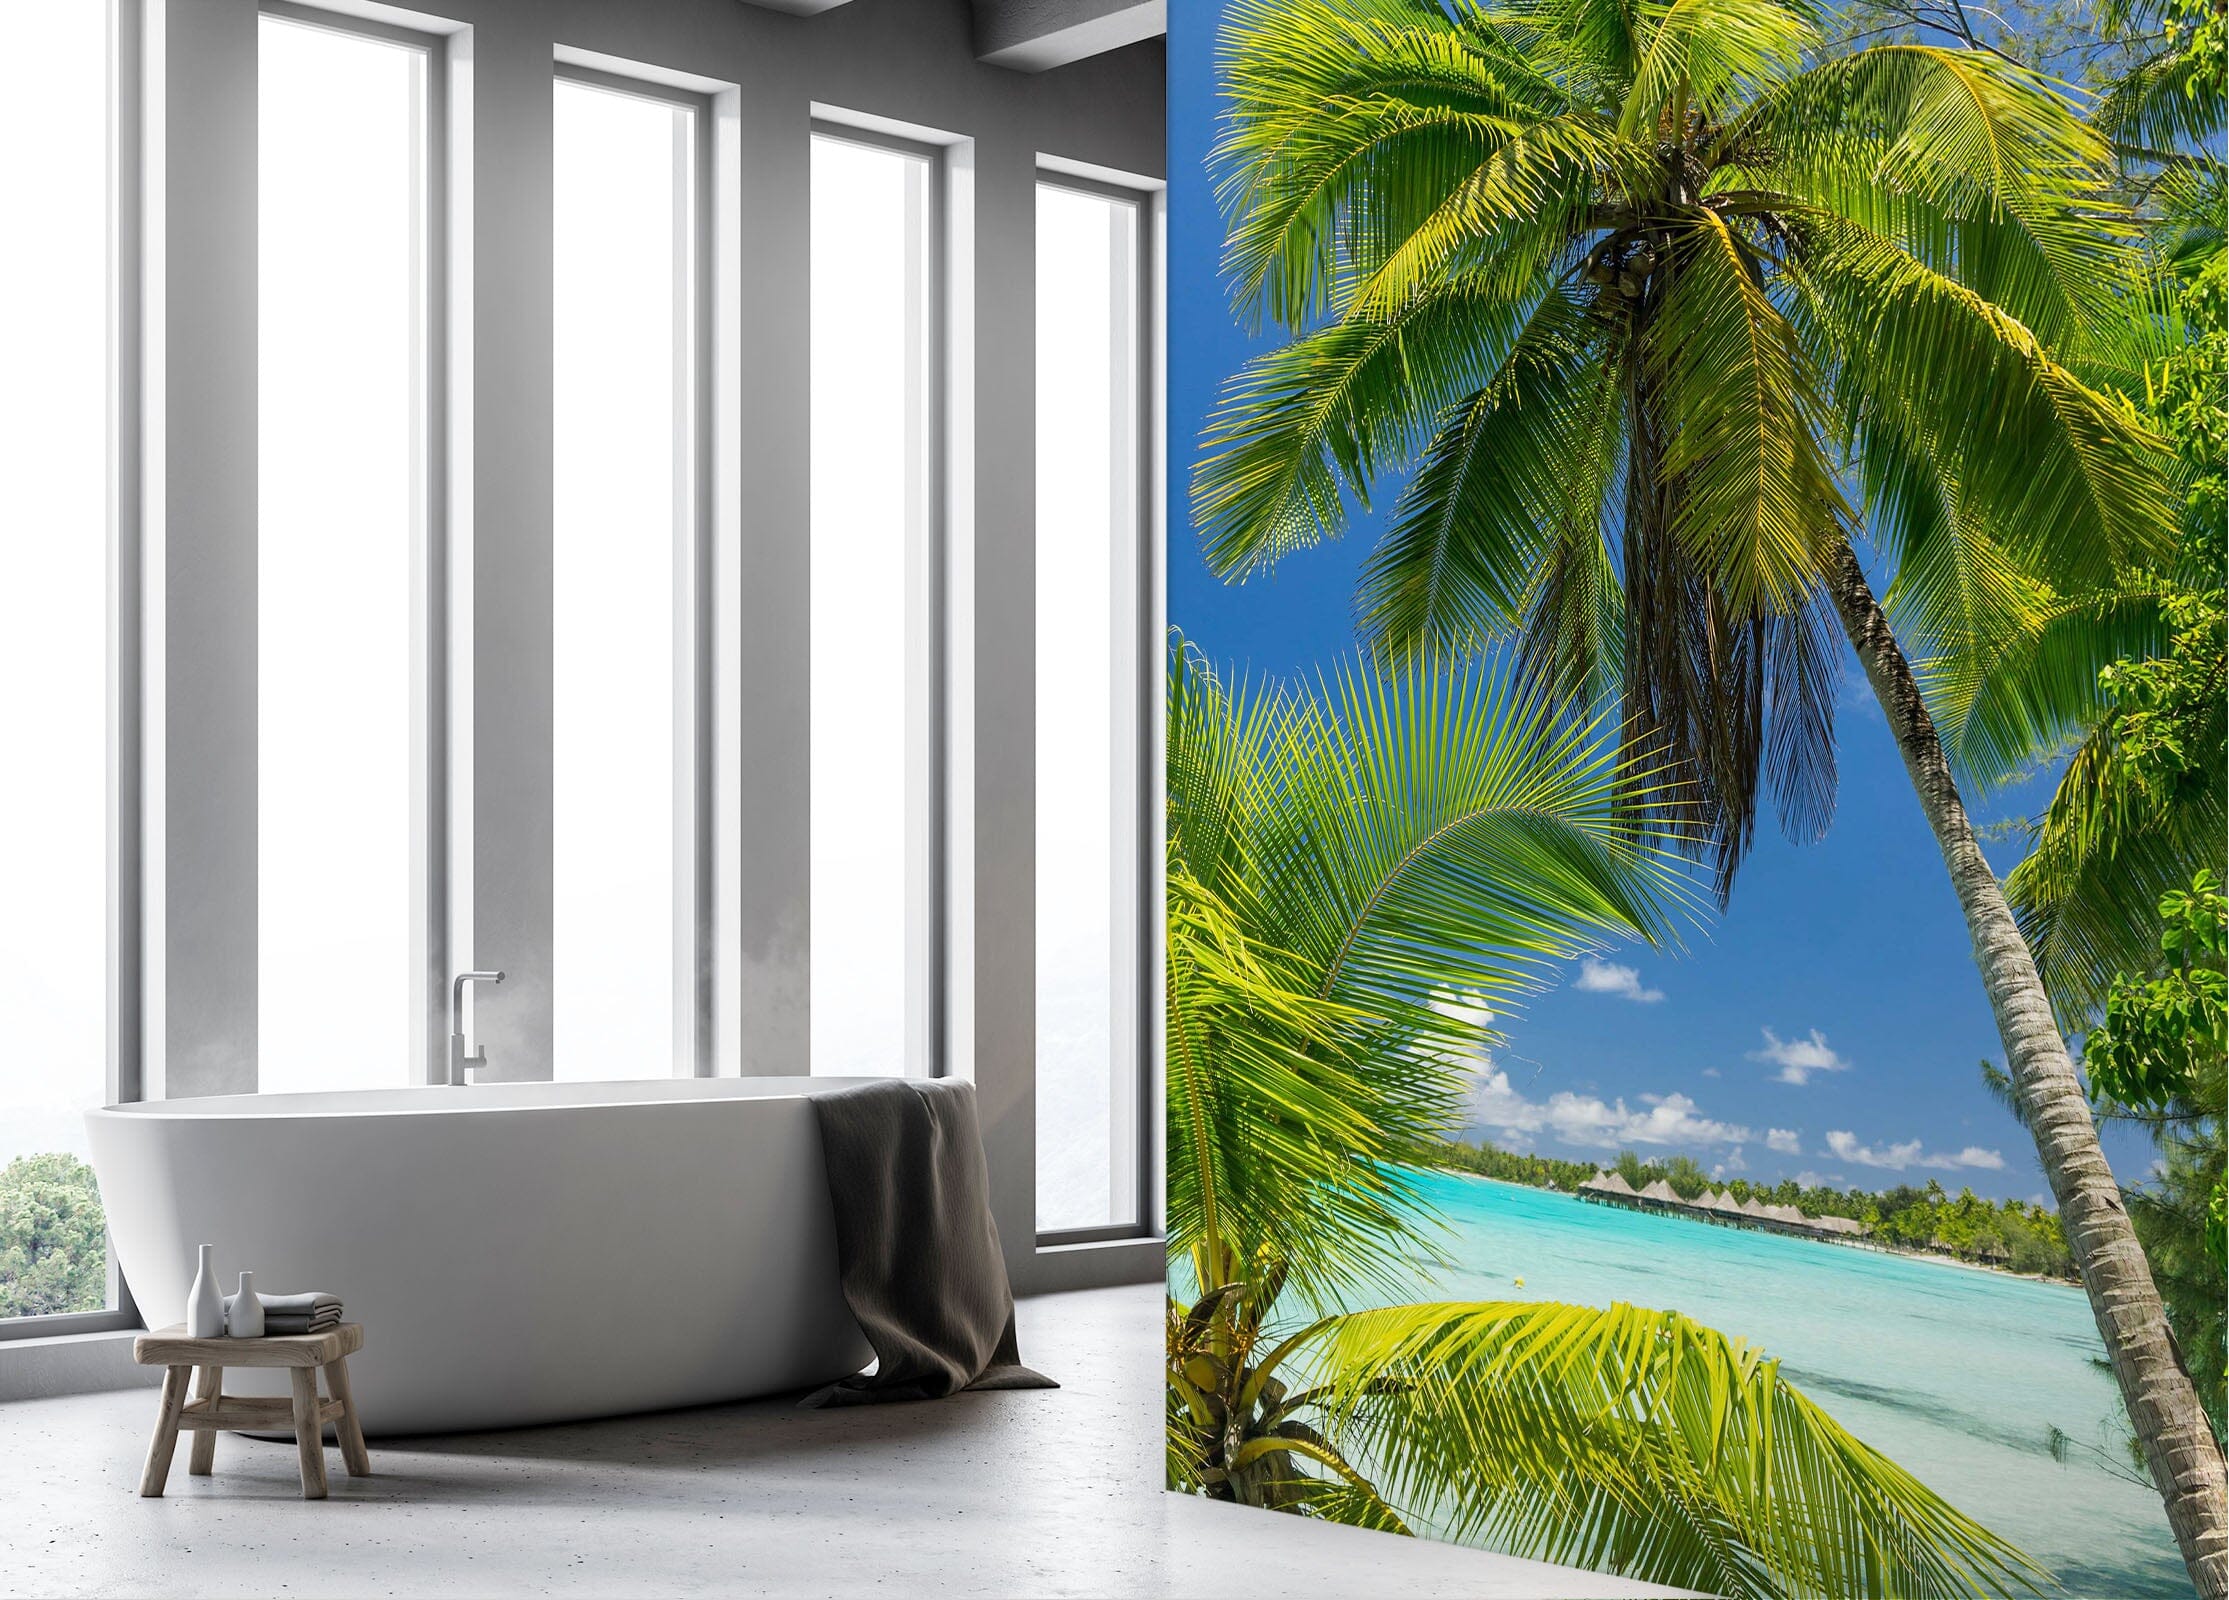 3D Coconut Tree Sea 081 Wall Murals Wallpaper AJ Wallpaper 2 